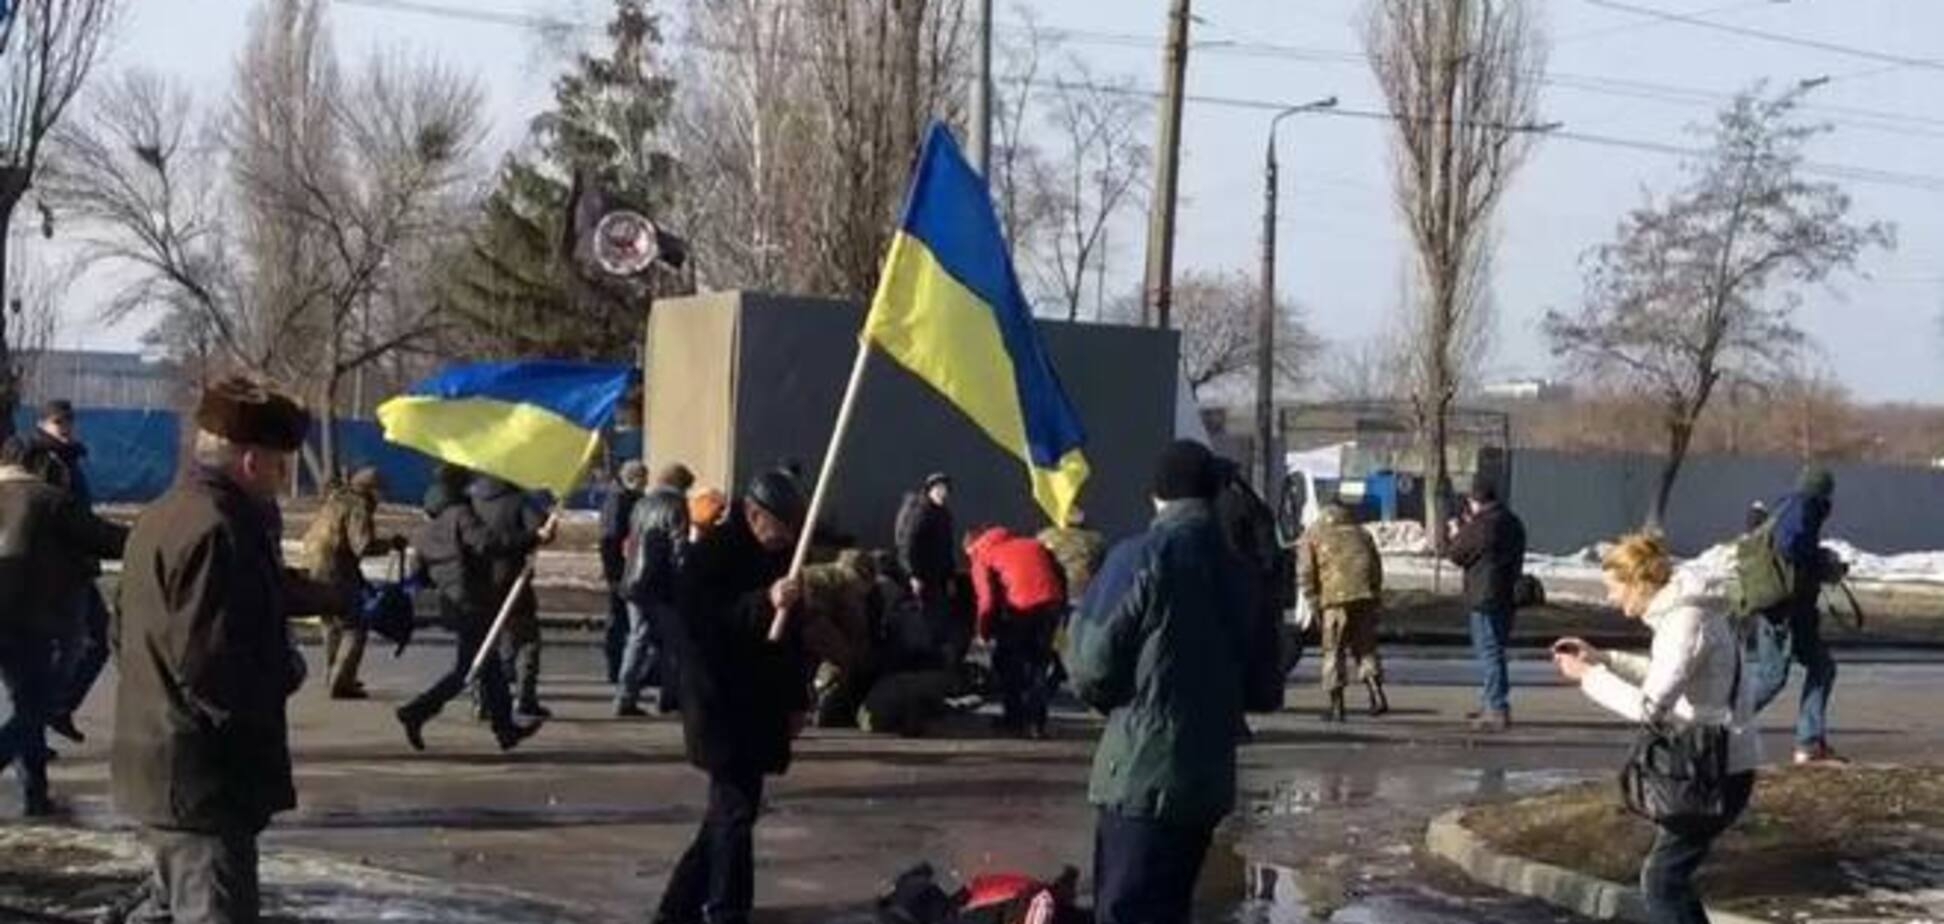 Теракт в Харькове: активисты зовут на митинг, а Кернес предостерегает от 'радикальных действий'